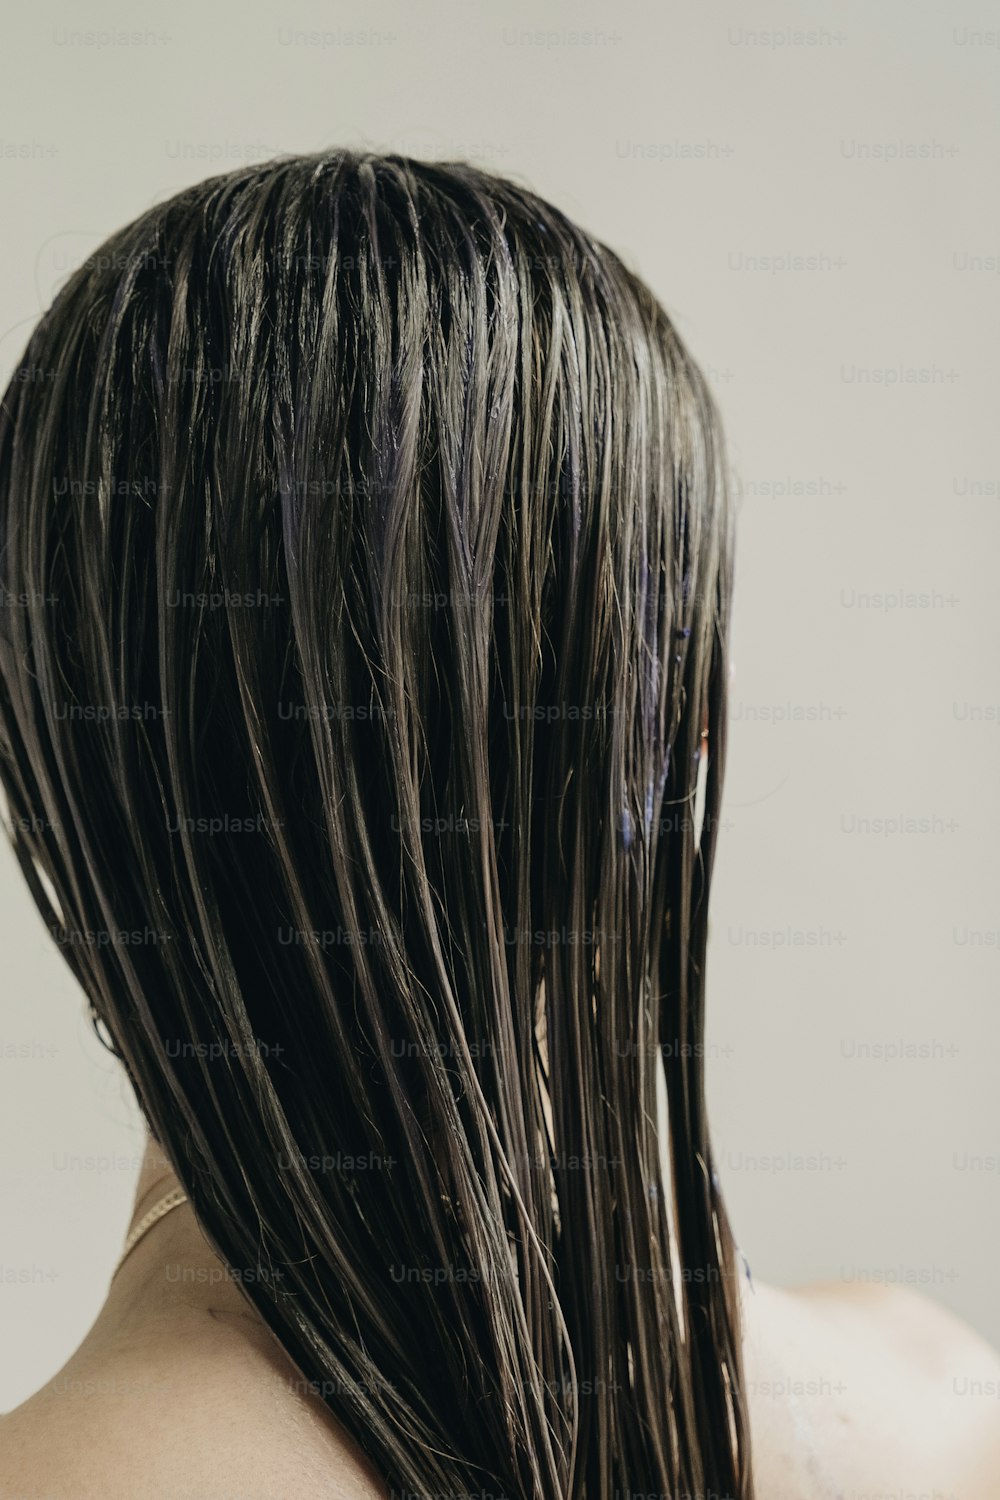 a parte de trás da cabeça de uma mulher com o cabelo molhado